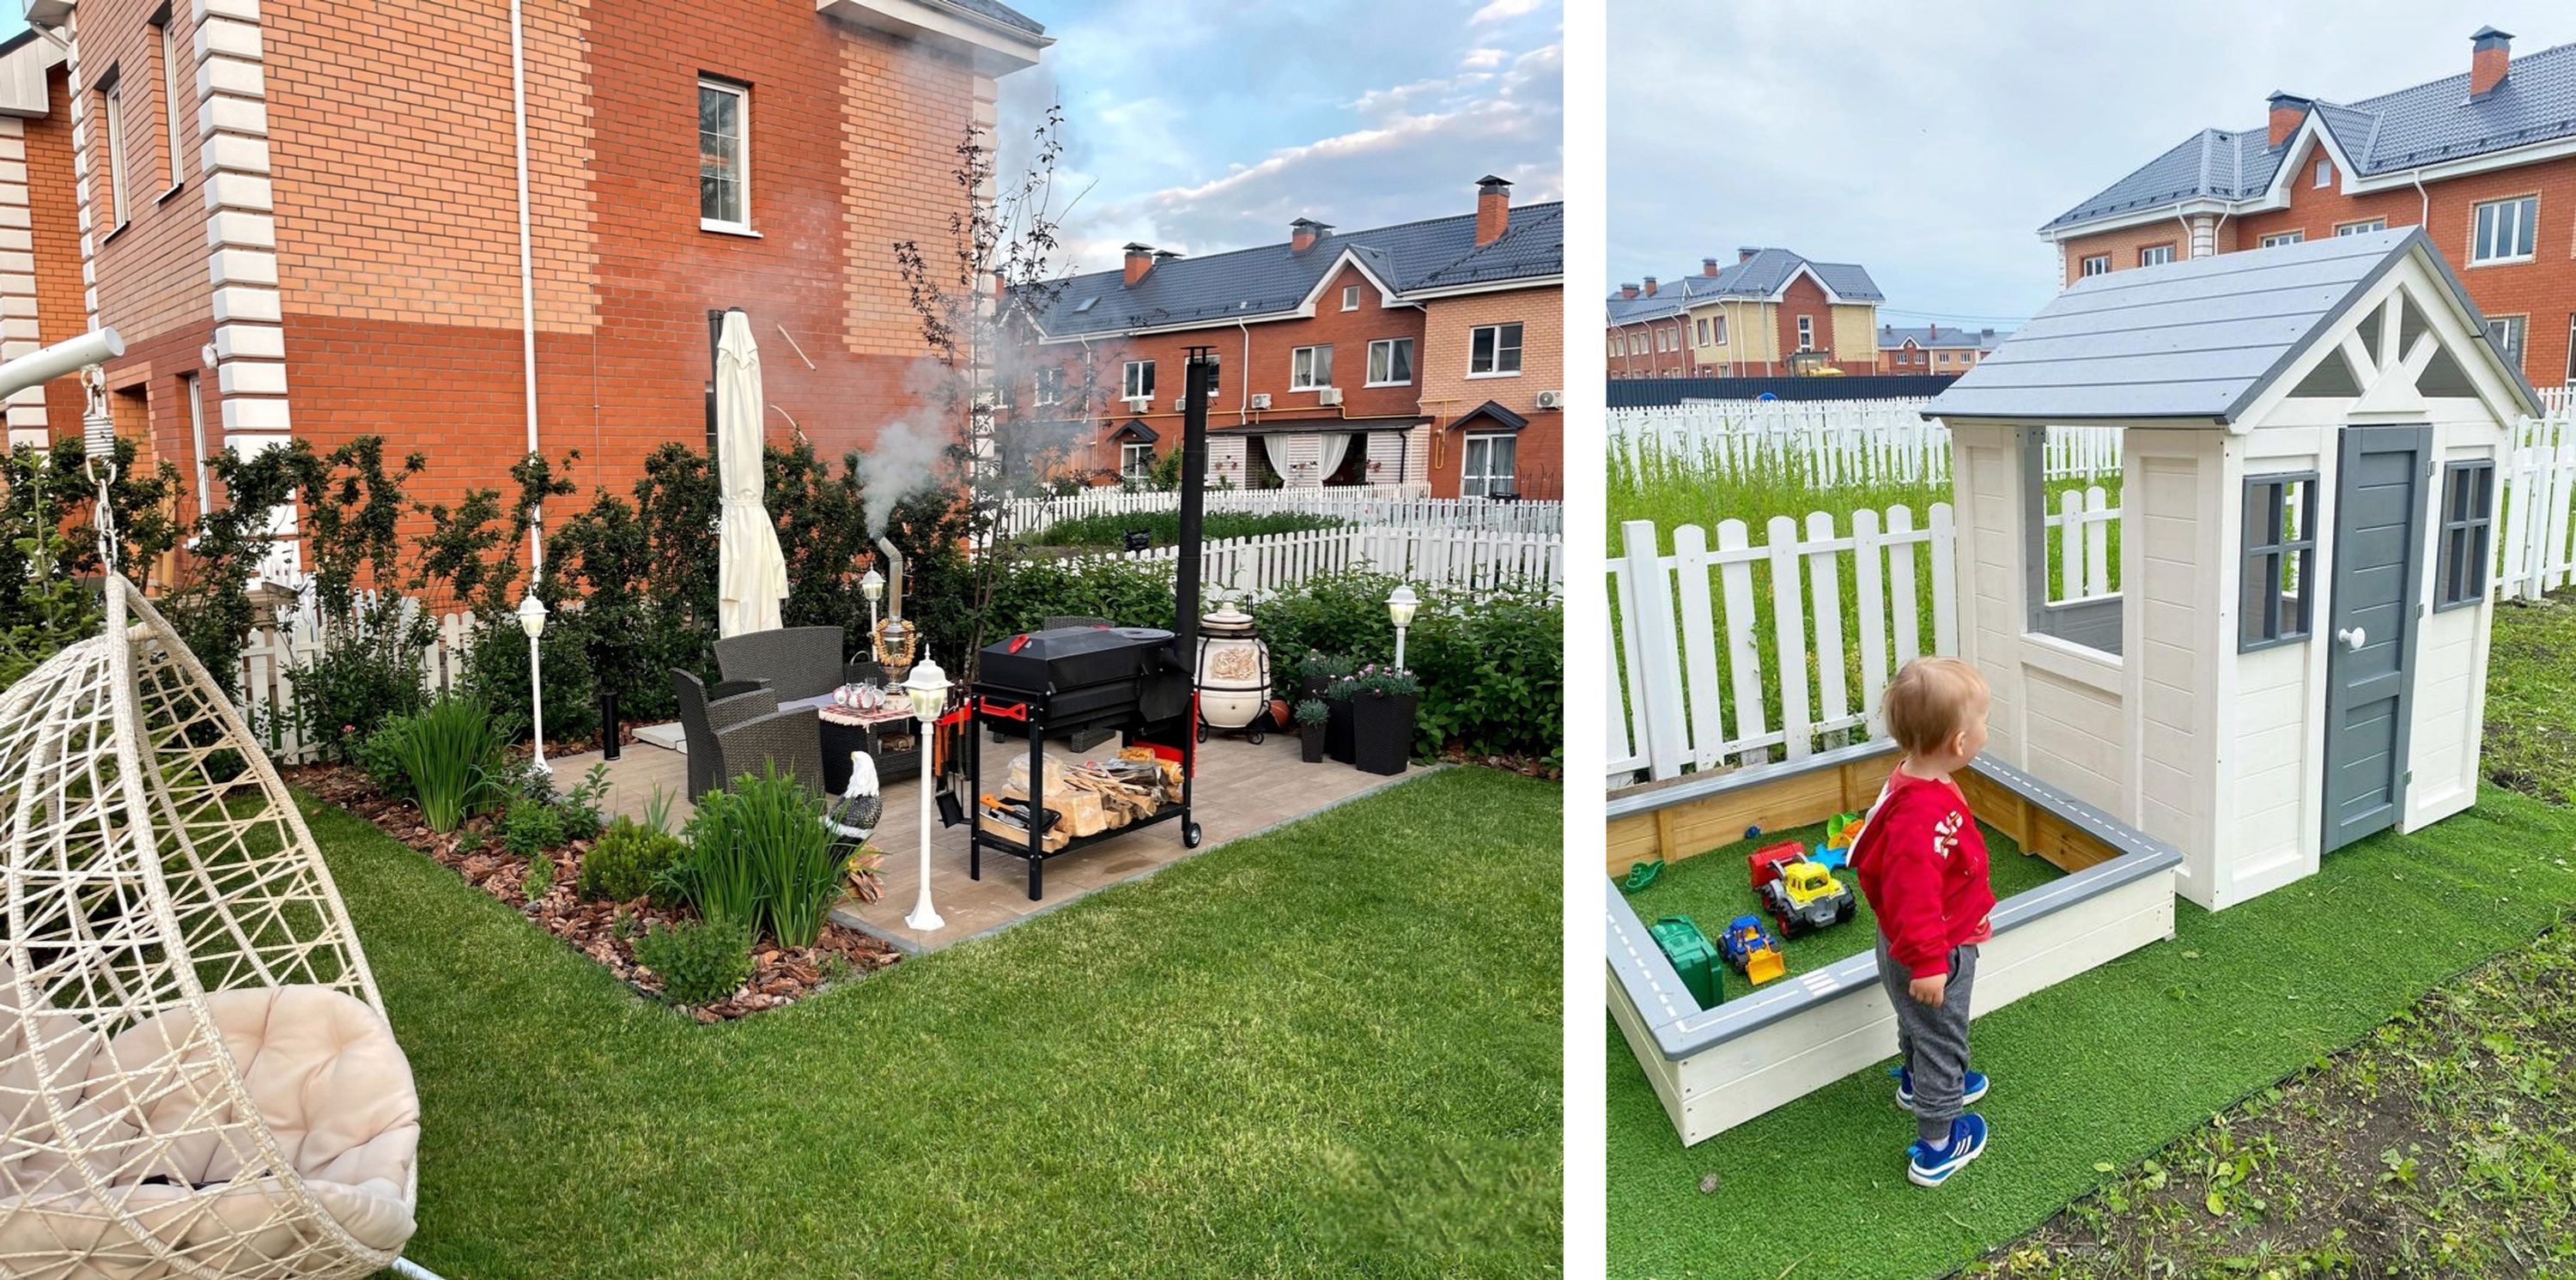 На собственном придомовом участке площадью четыре сотки можно разбить огородик, организовать детскую площадку или зону отдыха с мангалом